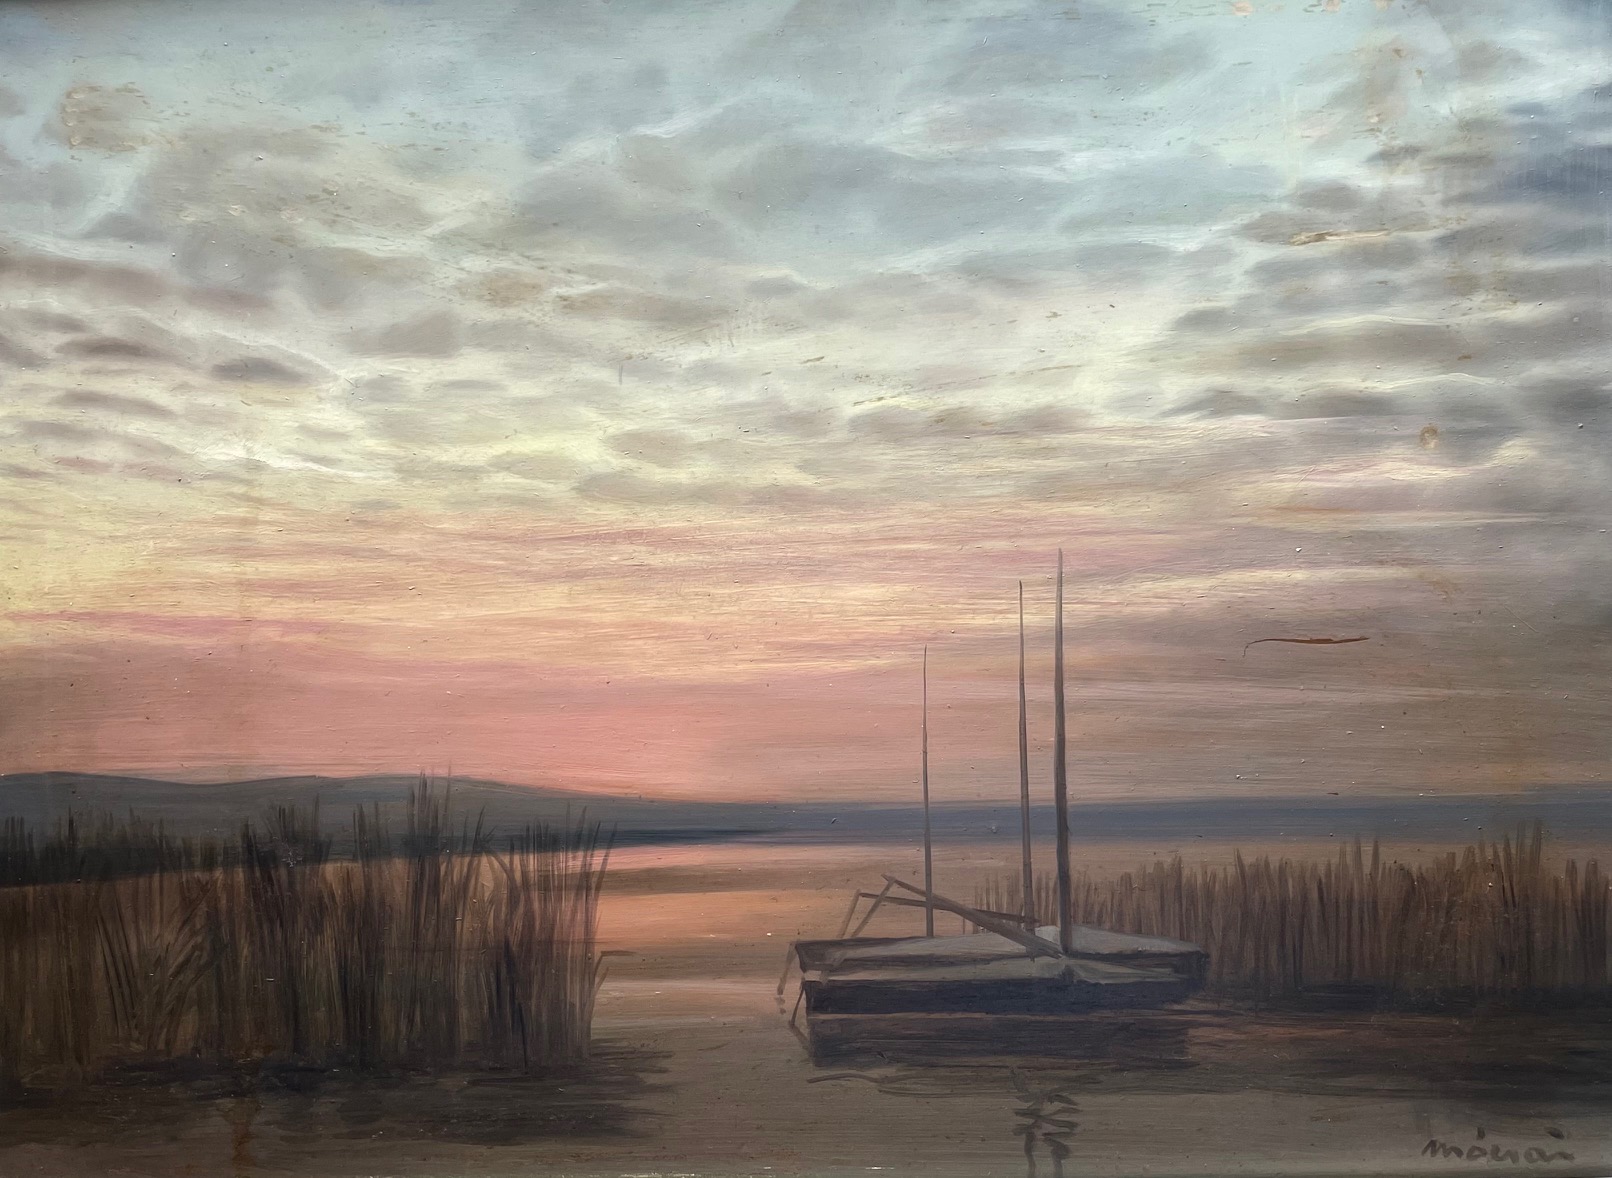 Mácsai István: Sunset at the seaside